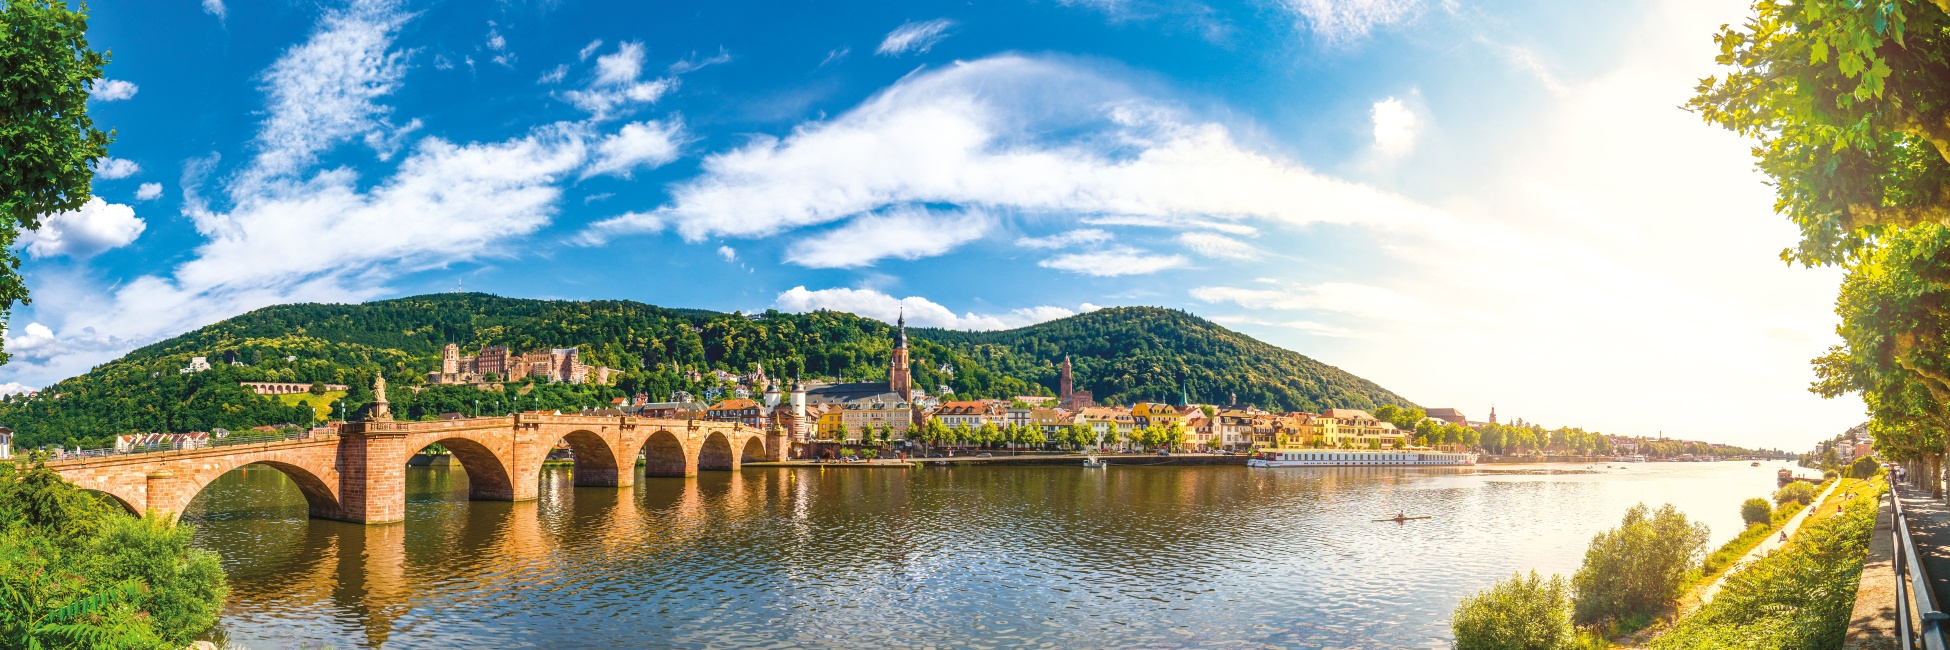 RSB - 4 ríos: Los valles de Mosela, Sarre, Rin romántico y Neckar